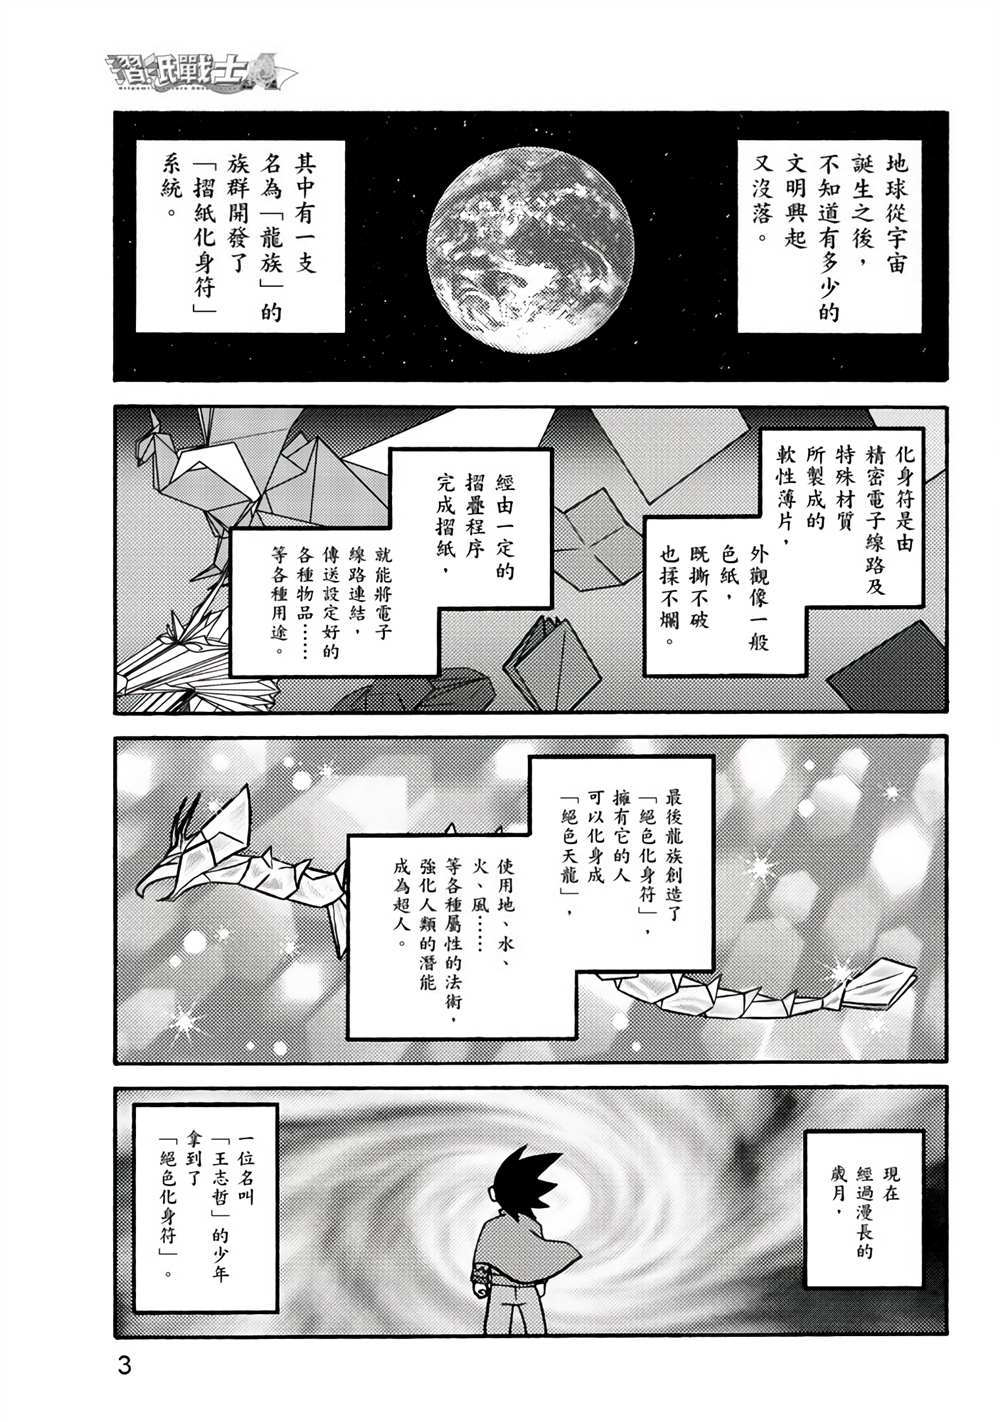 折纸战士A漫画,第1卷4图